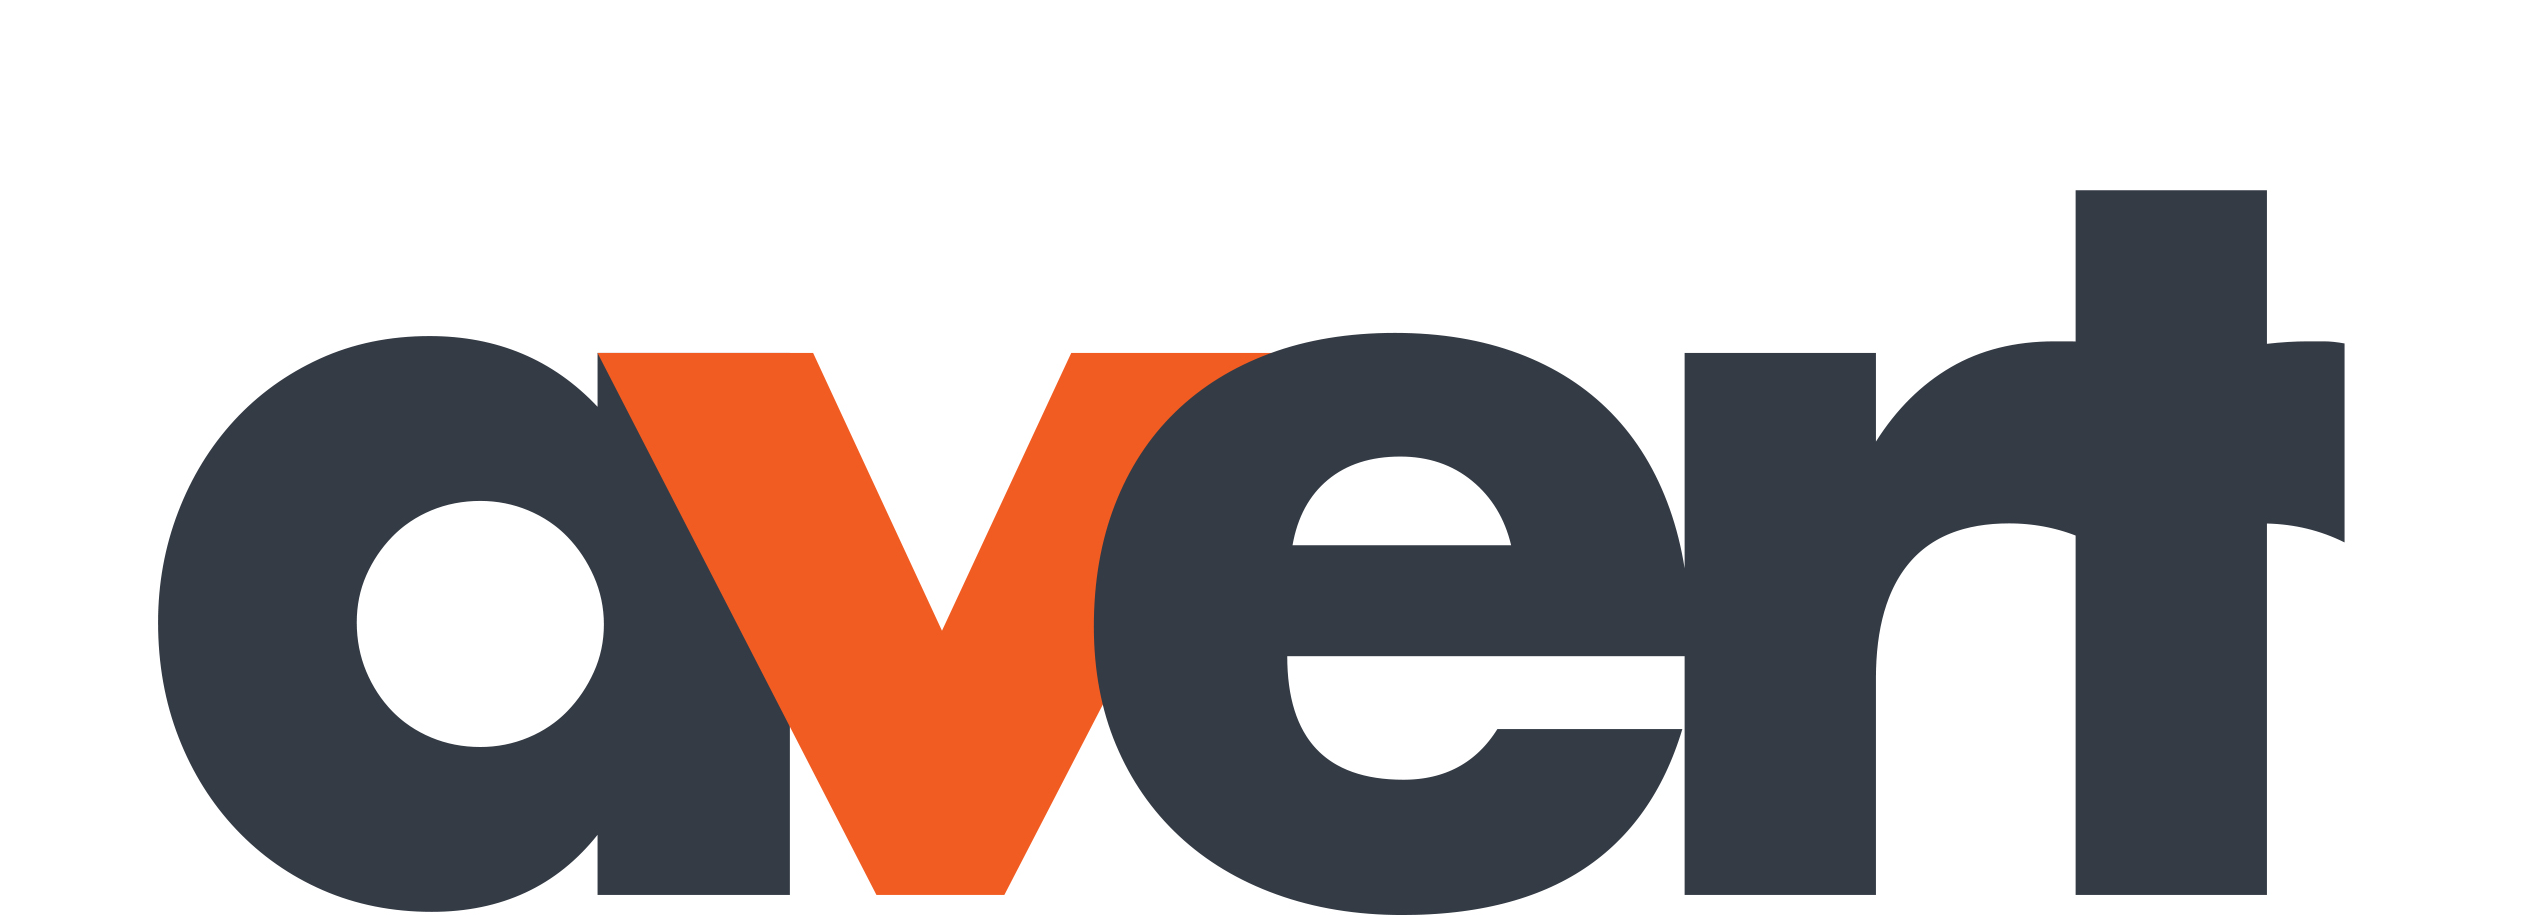 Avert logo